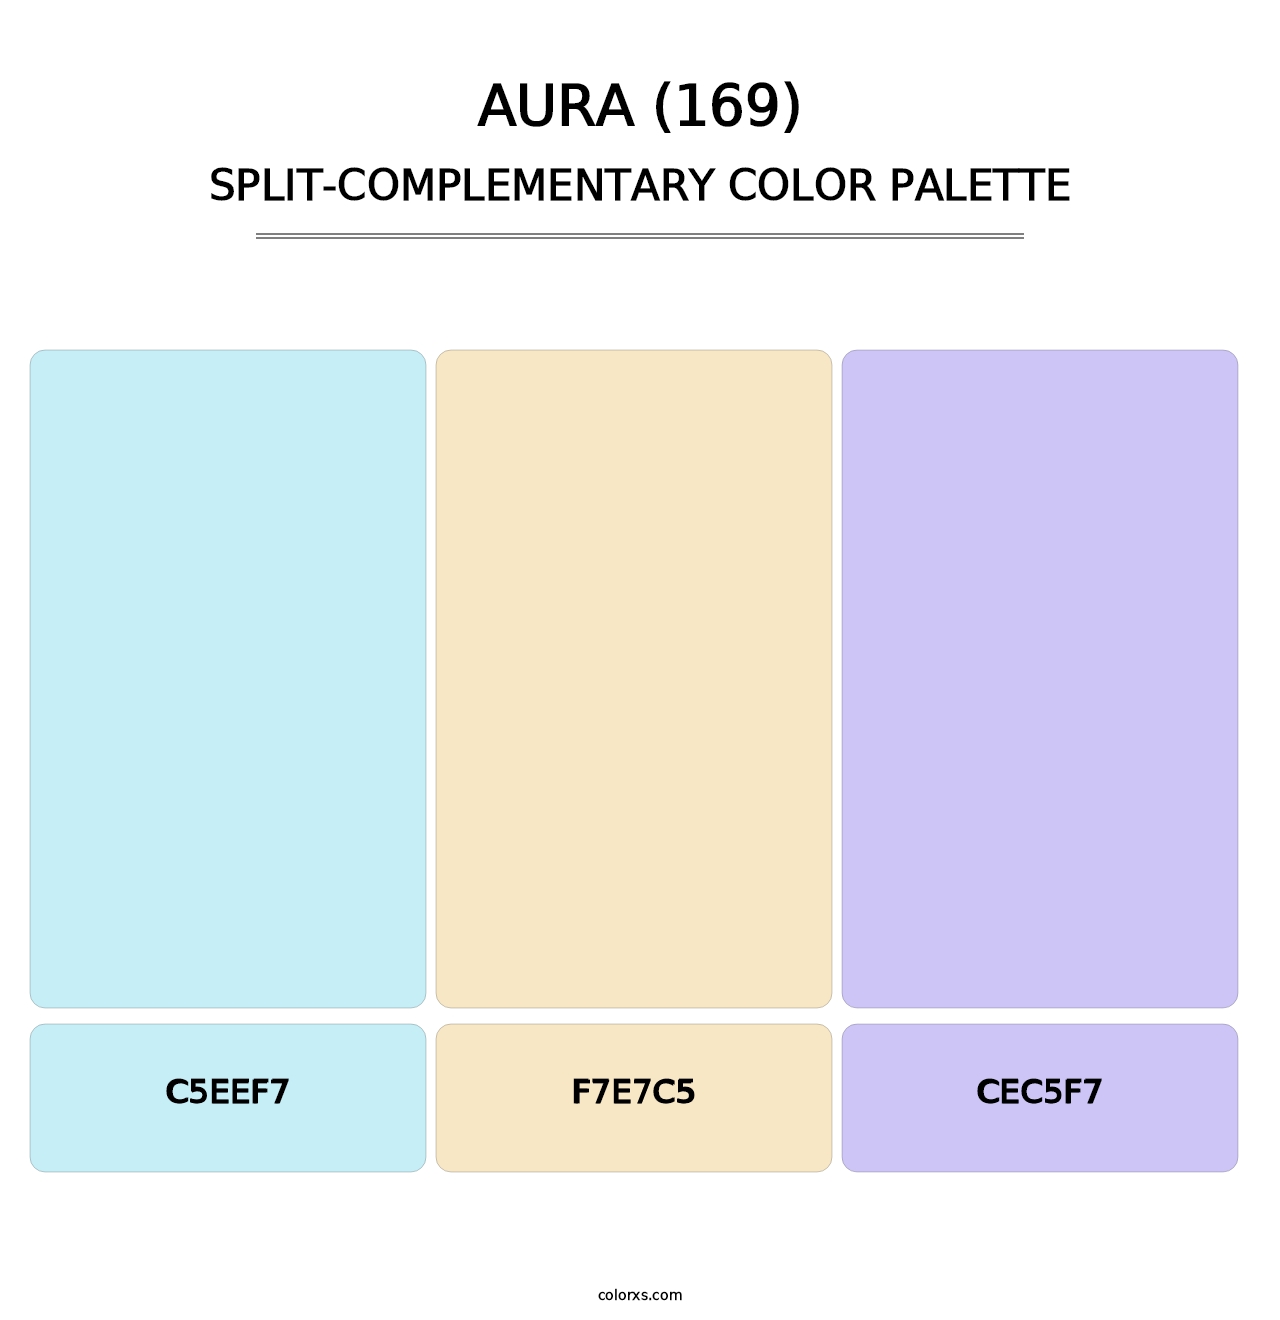 Aura (169) - Split-Complementary Color Palette